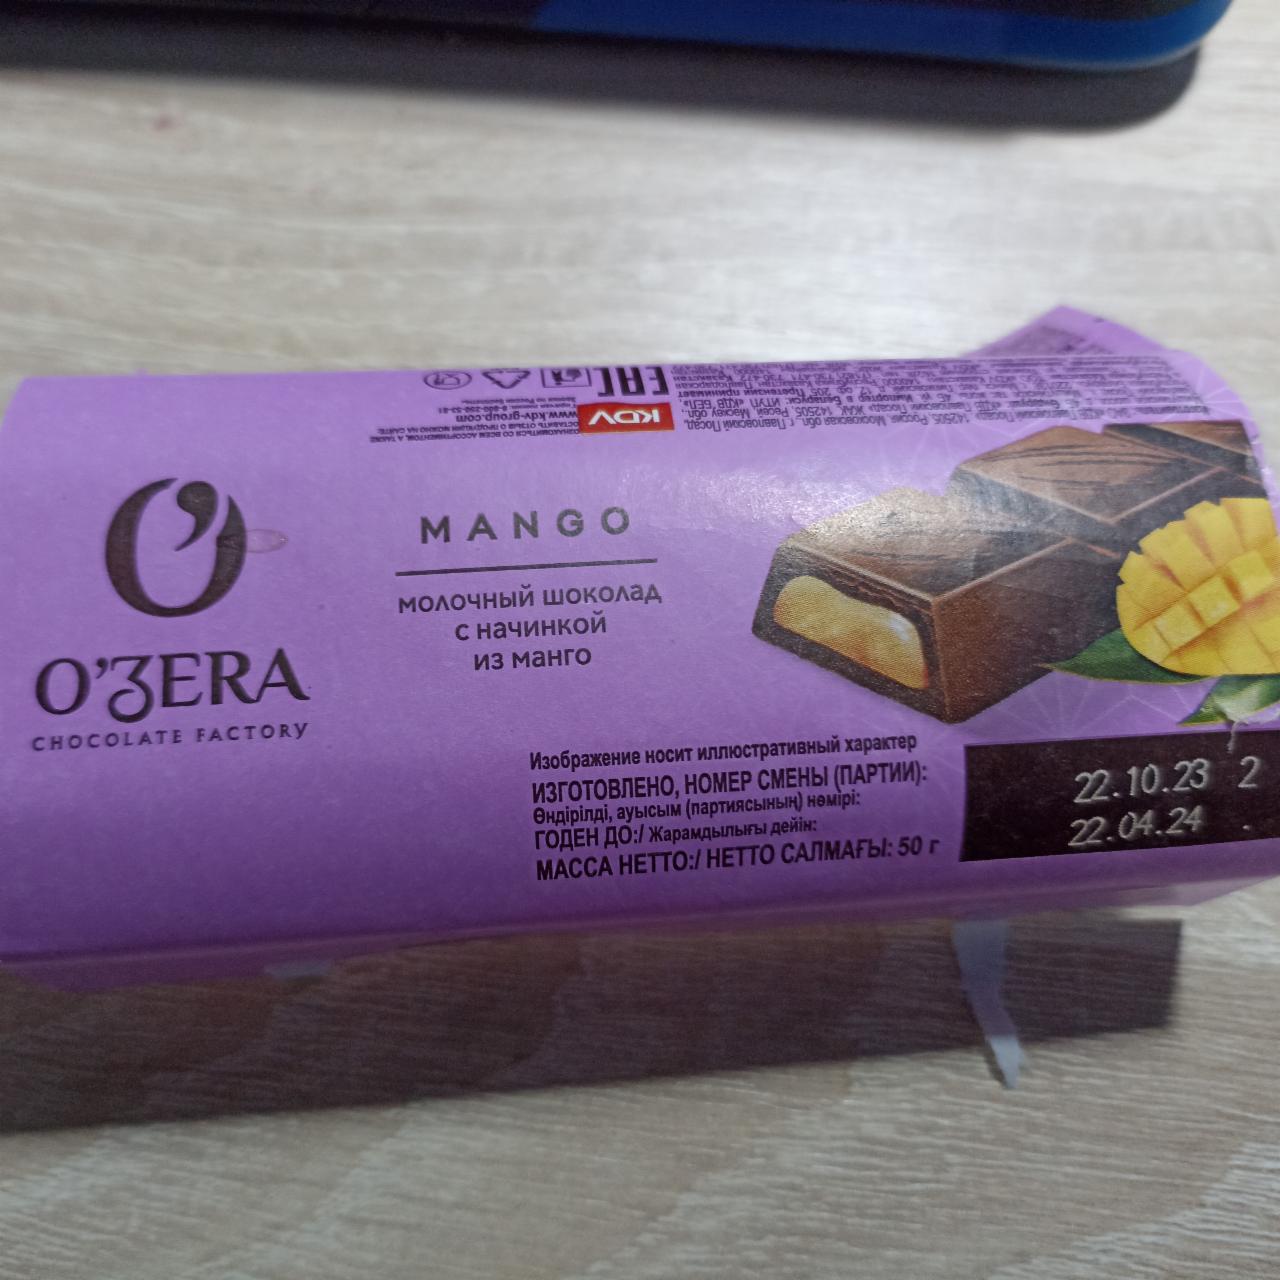 Фото - Молочный шоколад манго O'zera